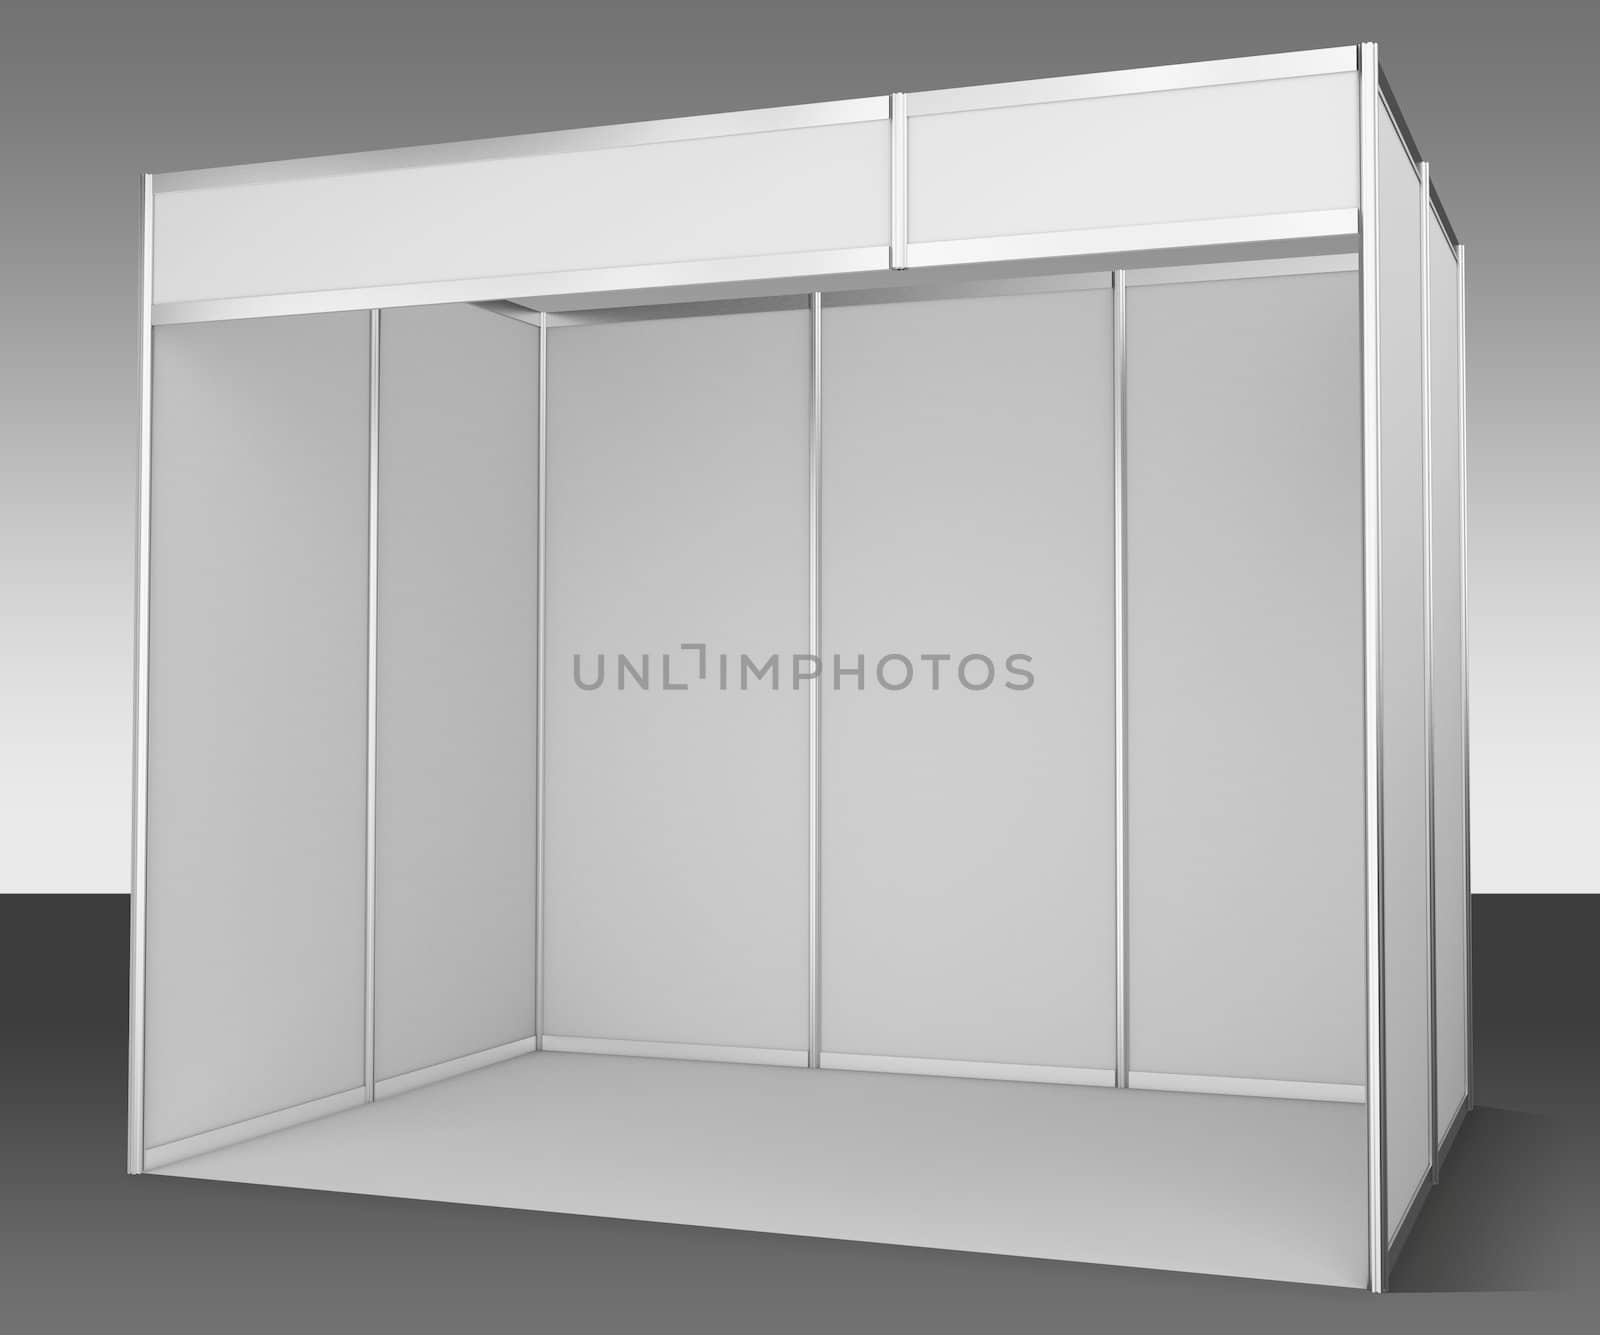 Empty box exhibition by pikaczy